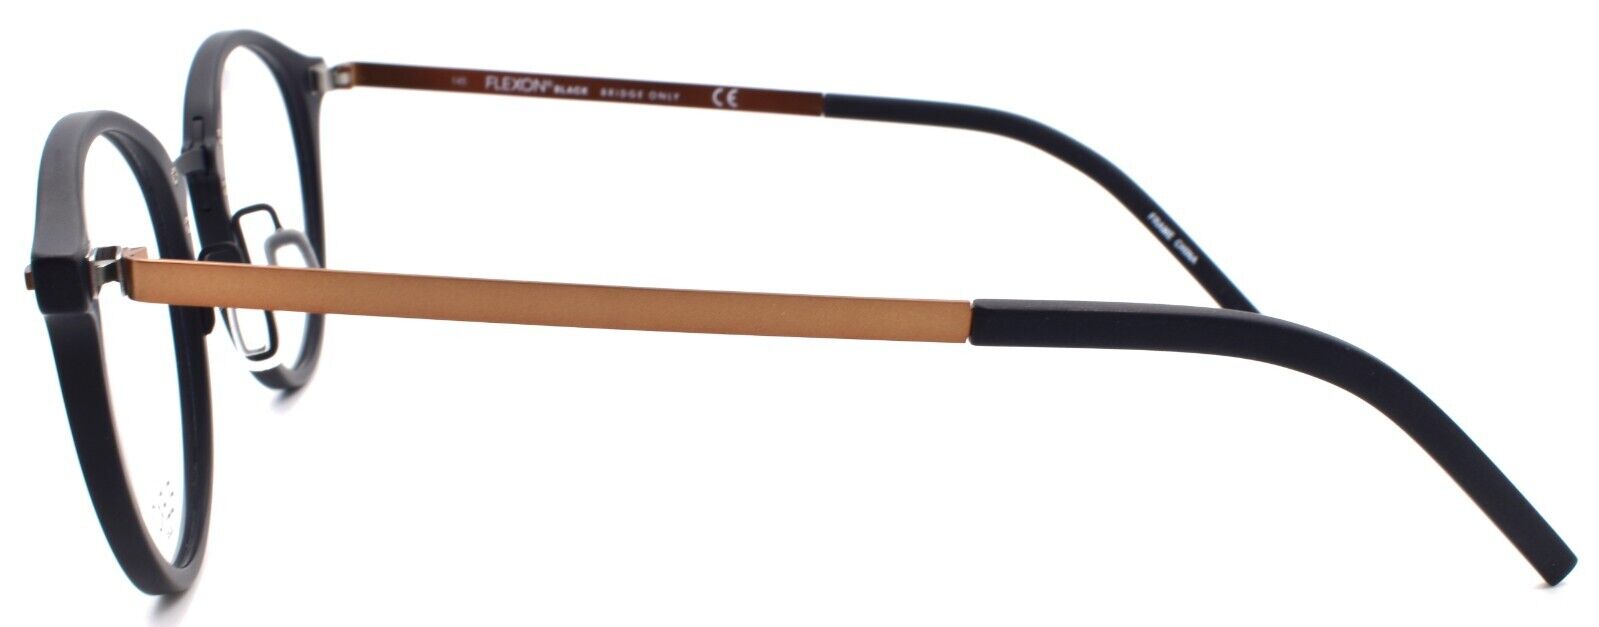 3-Flexon B2024 001 Men's Eyeglasses Frames Black 50-23-145 Flexible Titanium-883900206518-IKSpecs